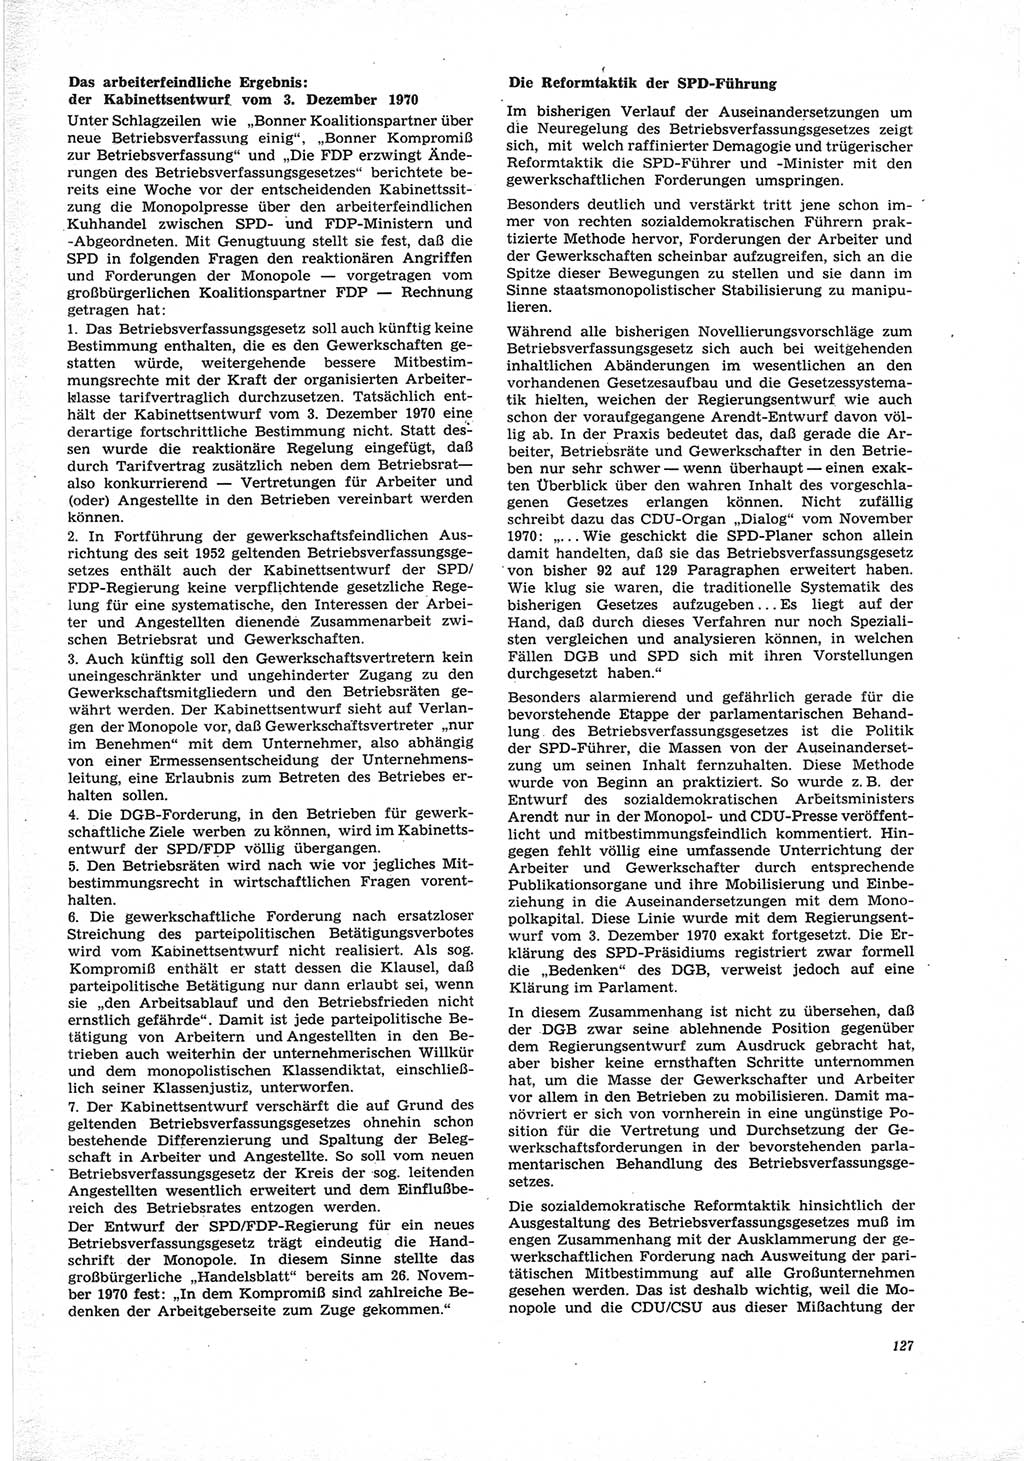 Neue Justiz (NJ), Zeitschrift für Recht und Rechtswissenschaft [Deutsche Demokratische Republik (DDR)], 25. Jahrgang 1971, Seite 127 (NJ DDR 1971, S. 127)